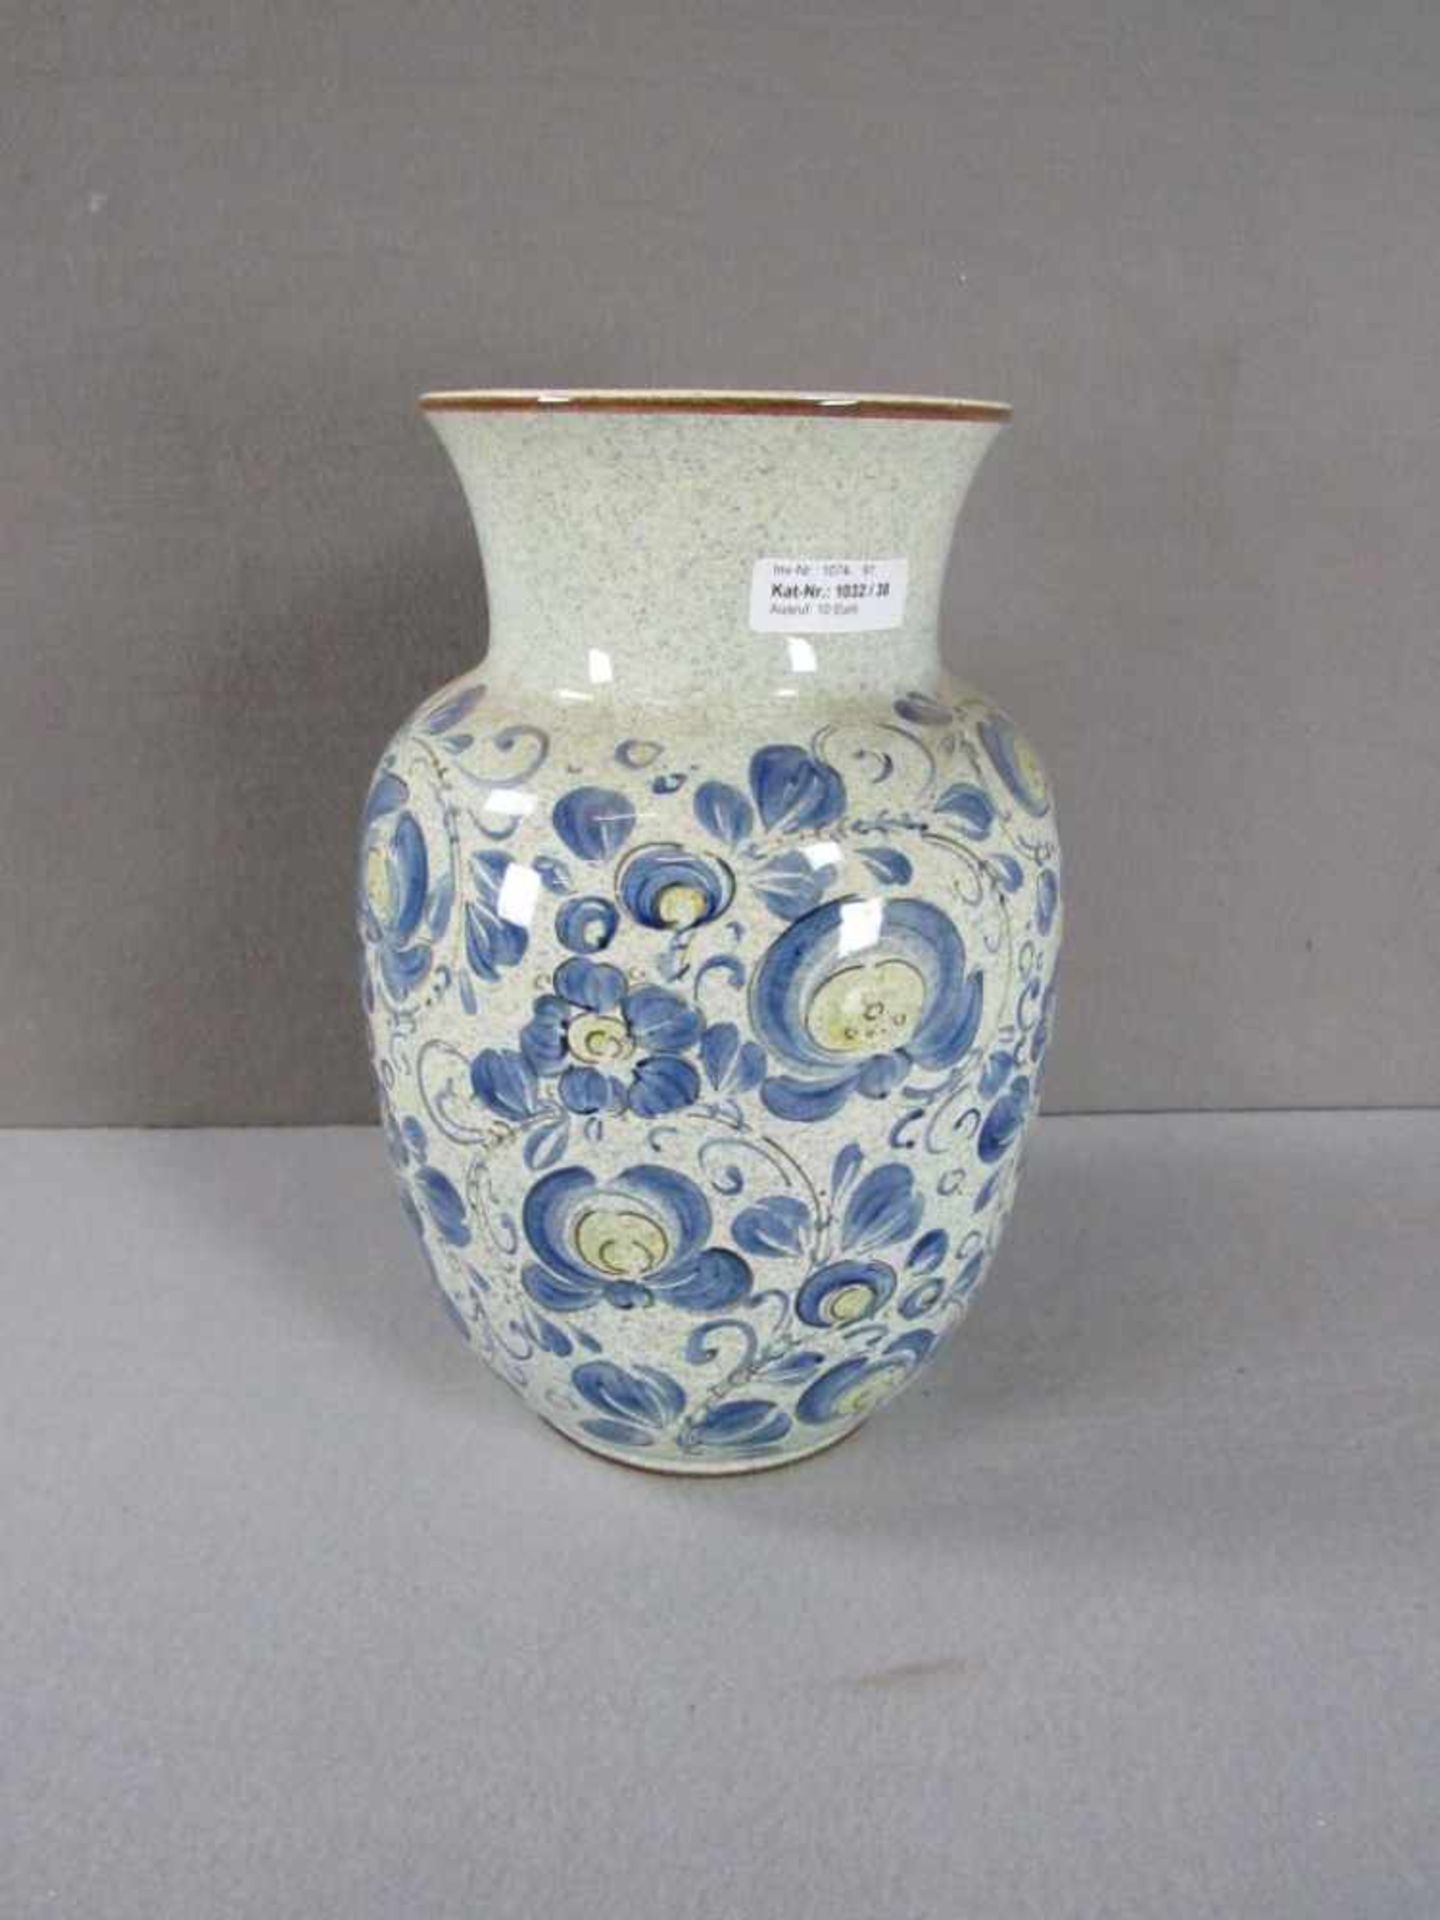 Vase Porzellan Villeroy & Boch 35cm hoch